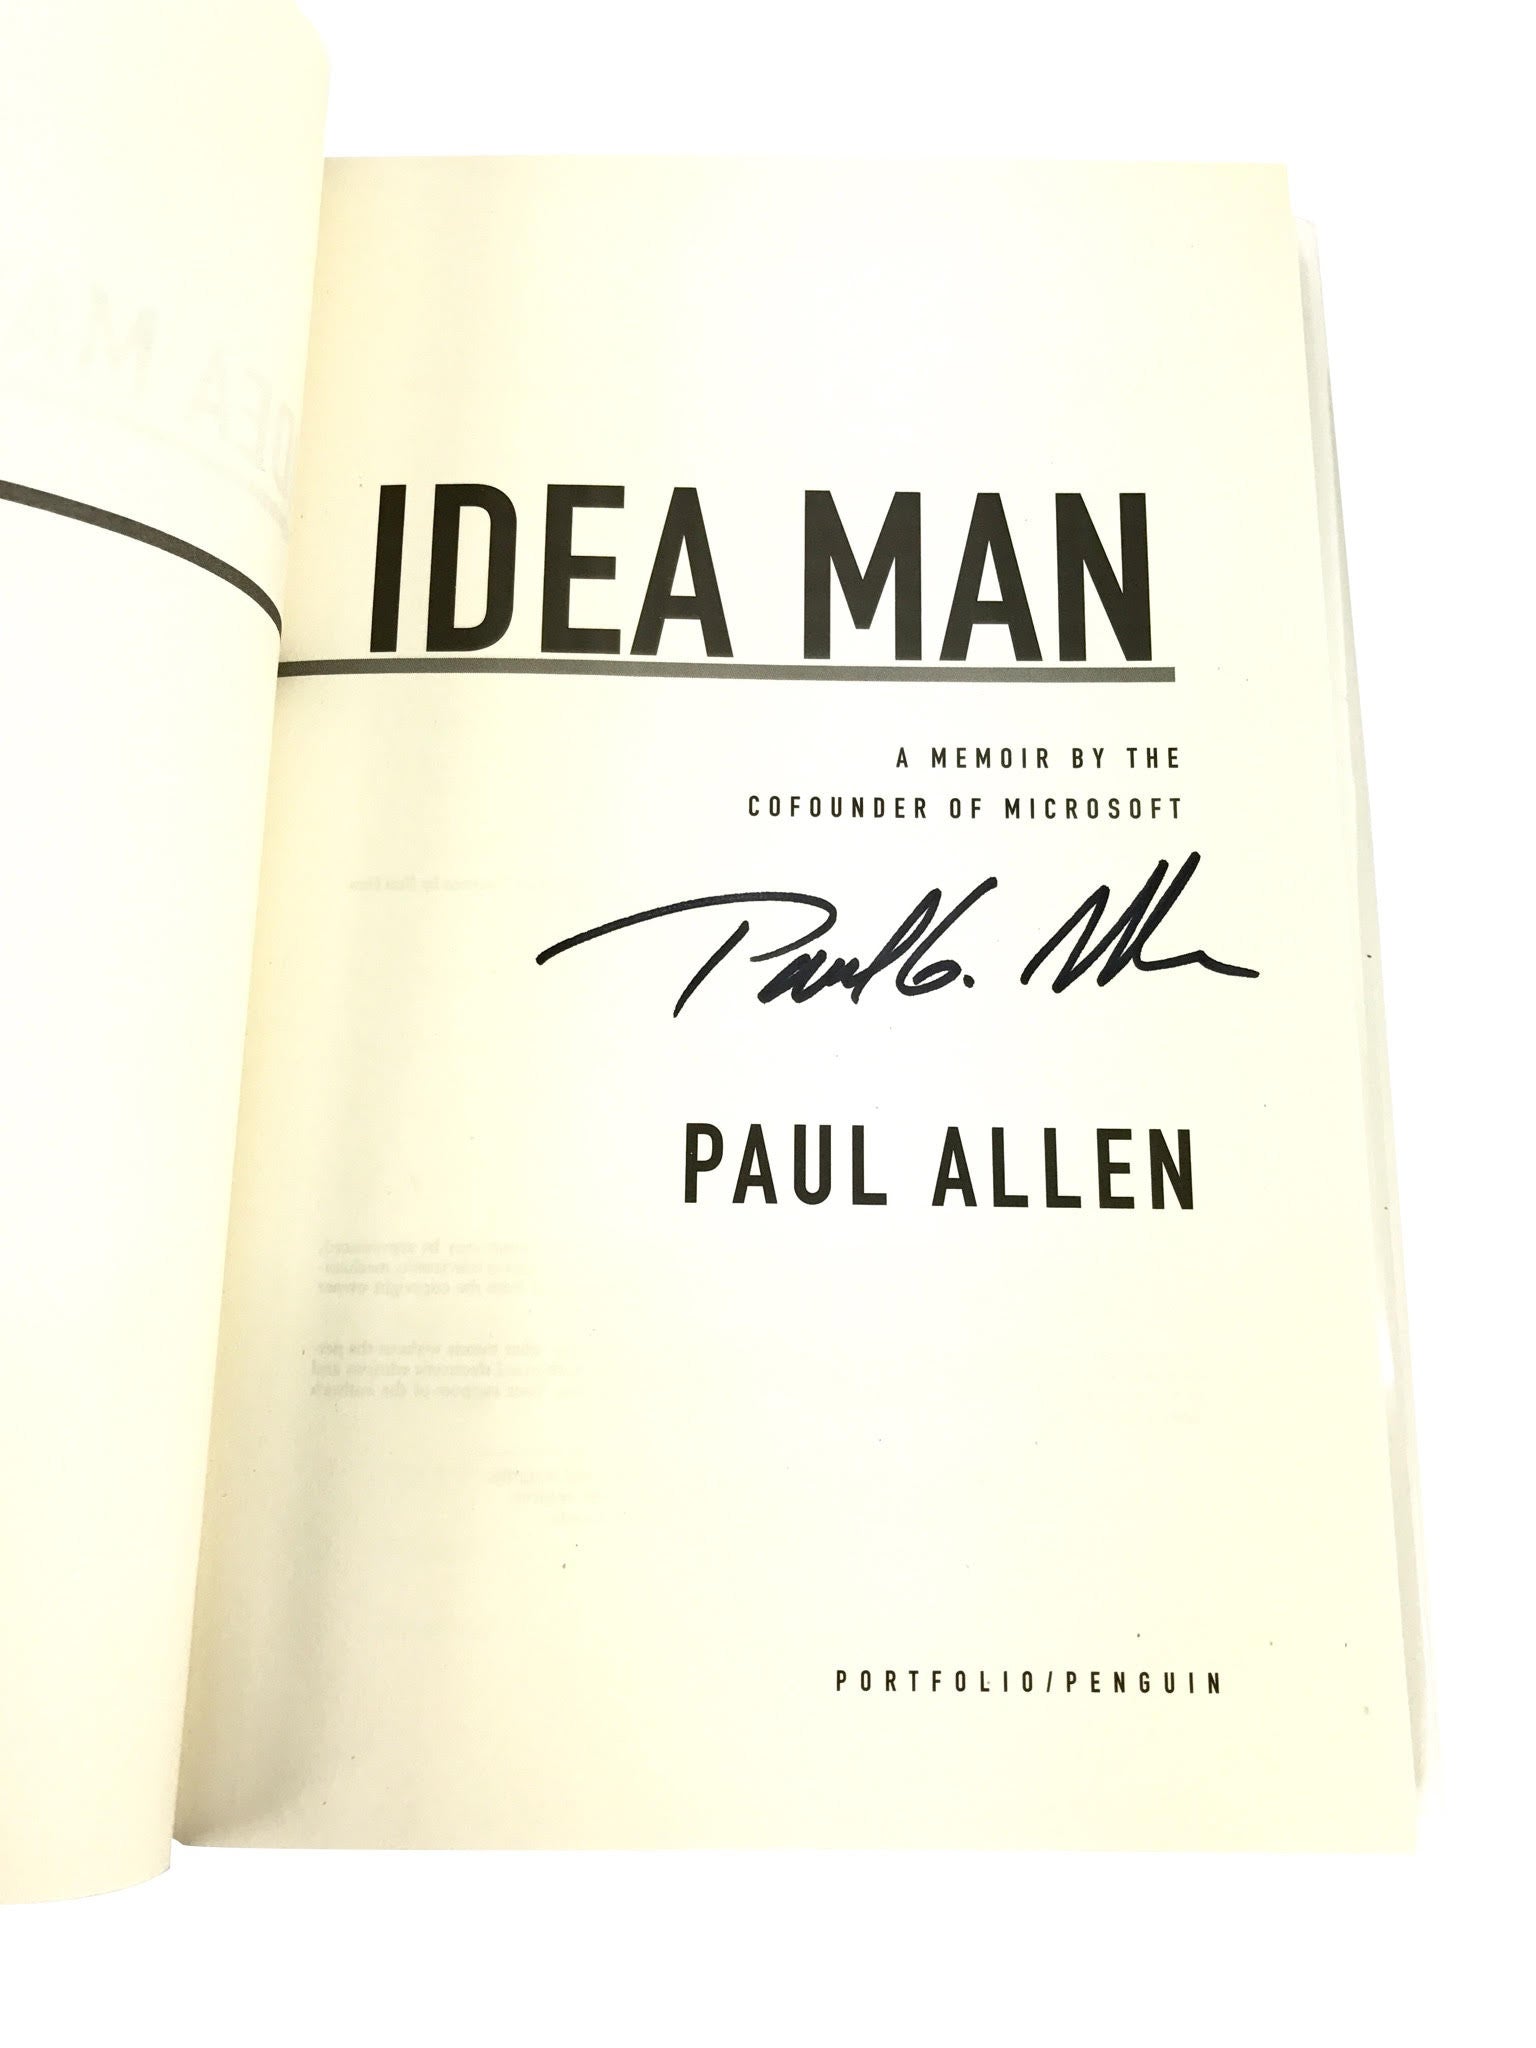 Paul Allen Signed Autobiography: "Idea Man"